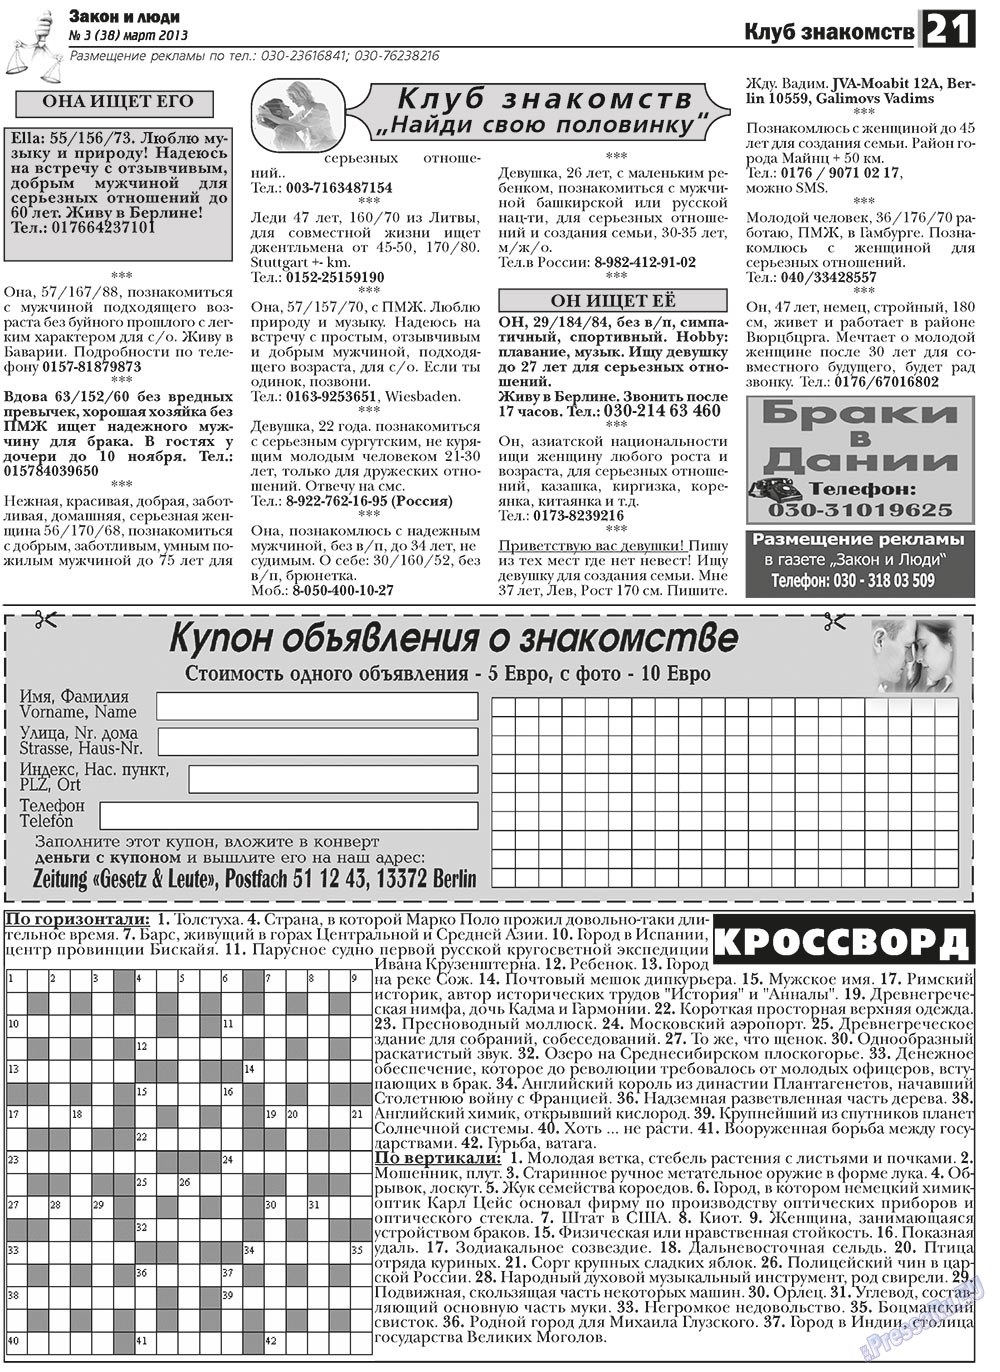 Закон и люди, газета. 2013 №3 стр.21